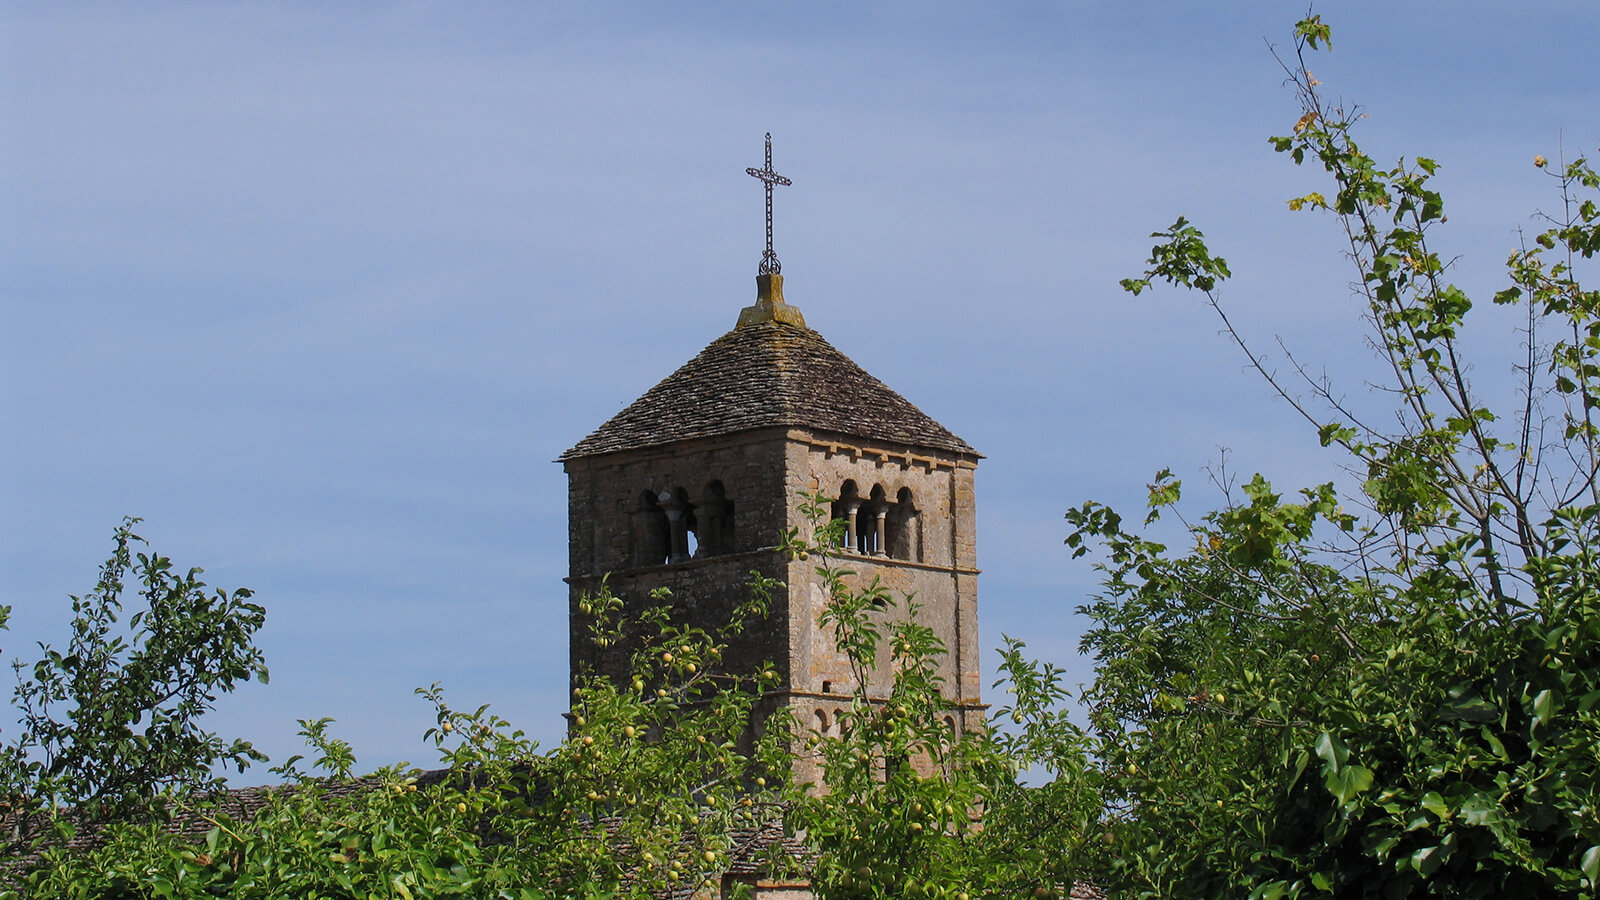 Der Kirchturm der Kirche von Taizé vor blauem Himmel